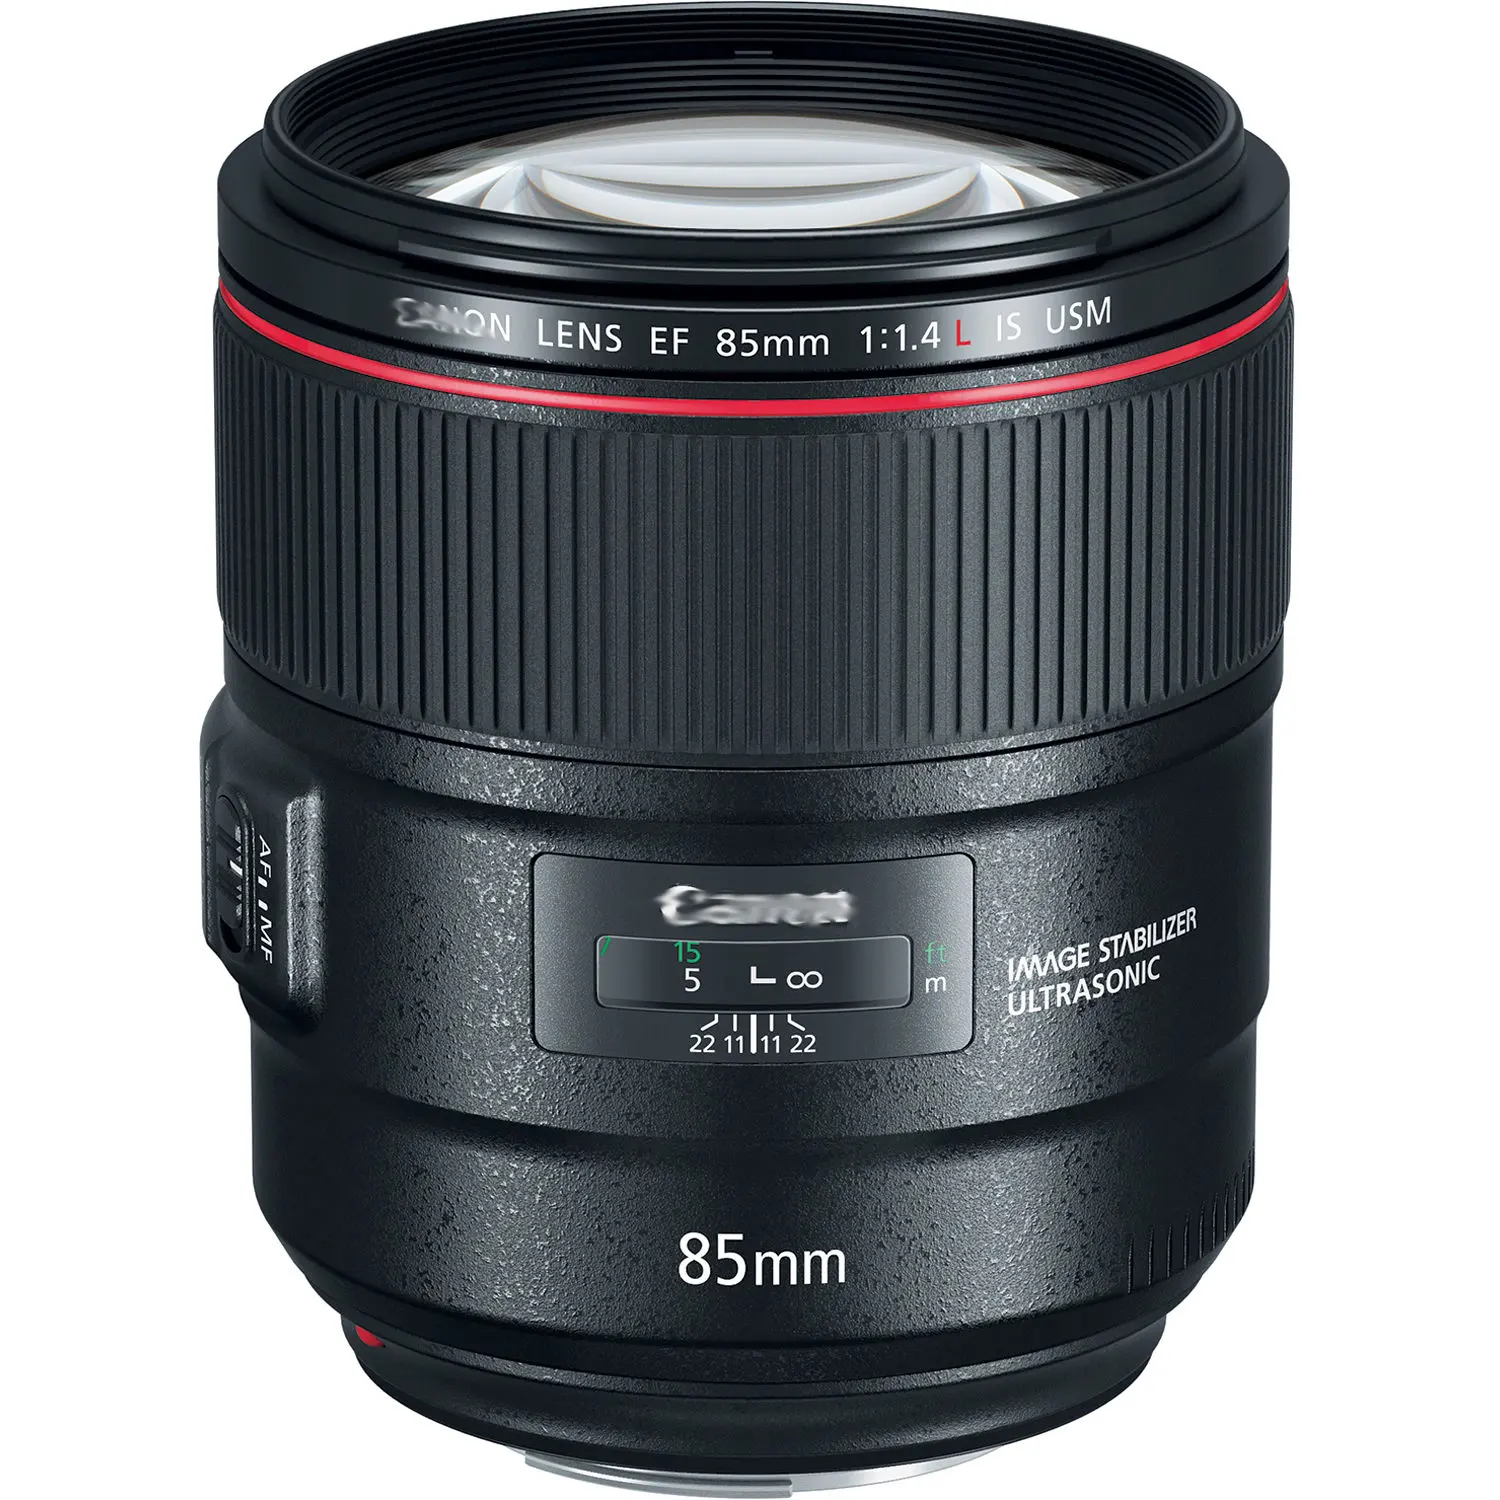 Used prime lens EF 85mm f/1.4L IS USM Lens full frame Medium telephoto slr camera lens